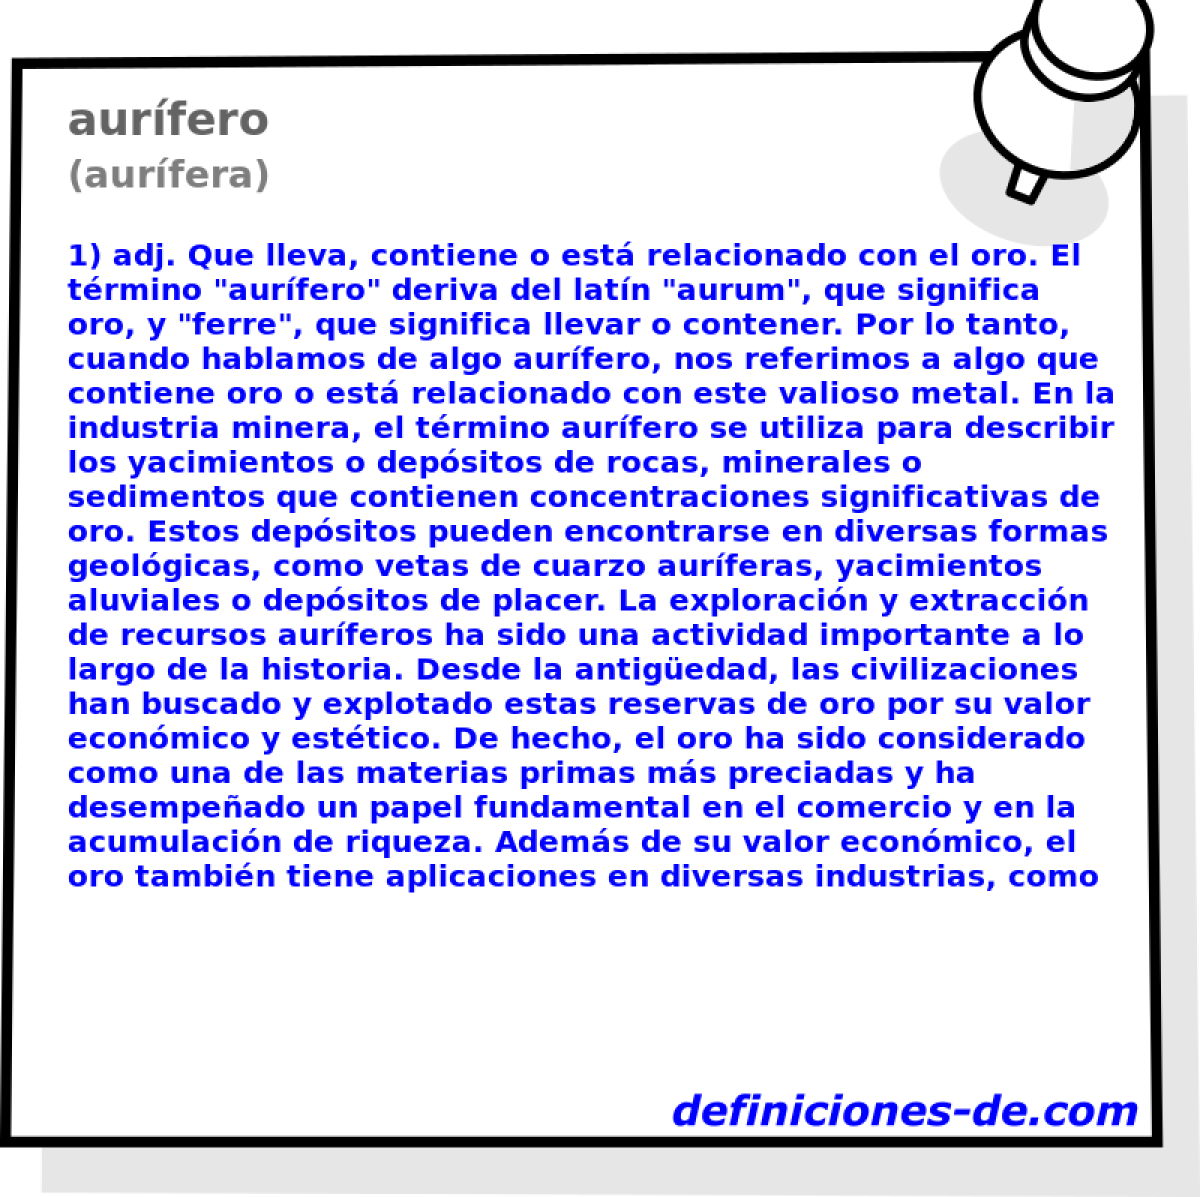 aurfero (aurfera)